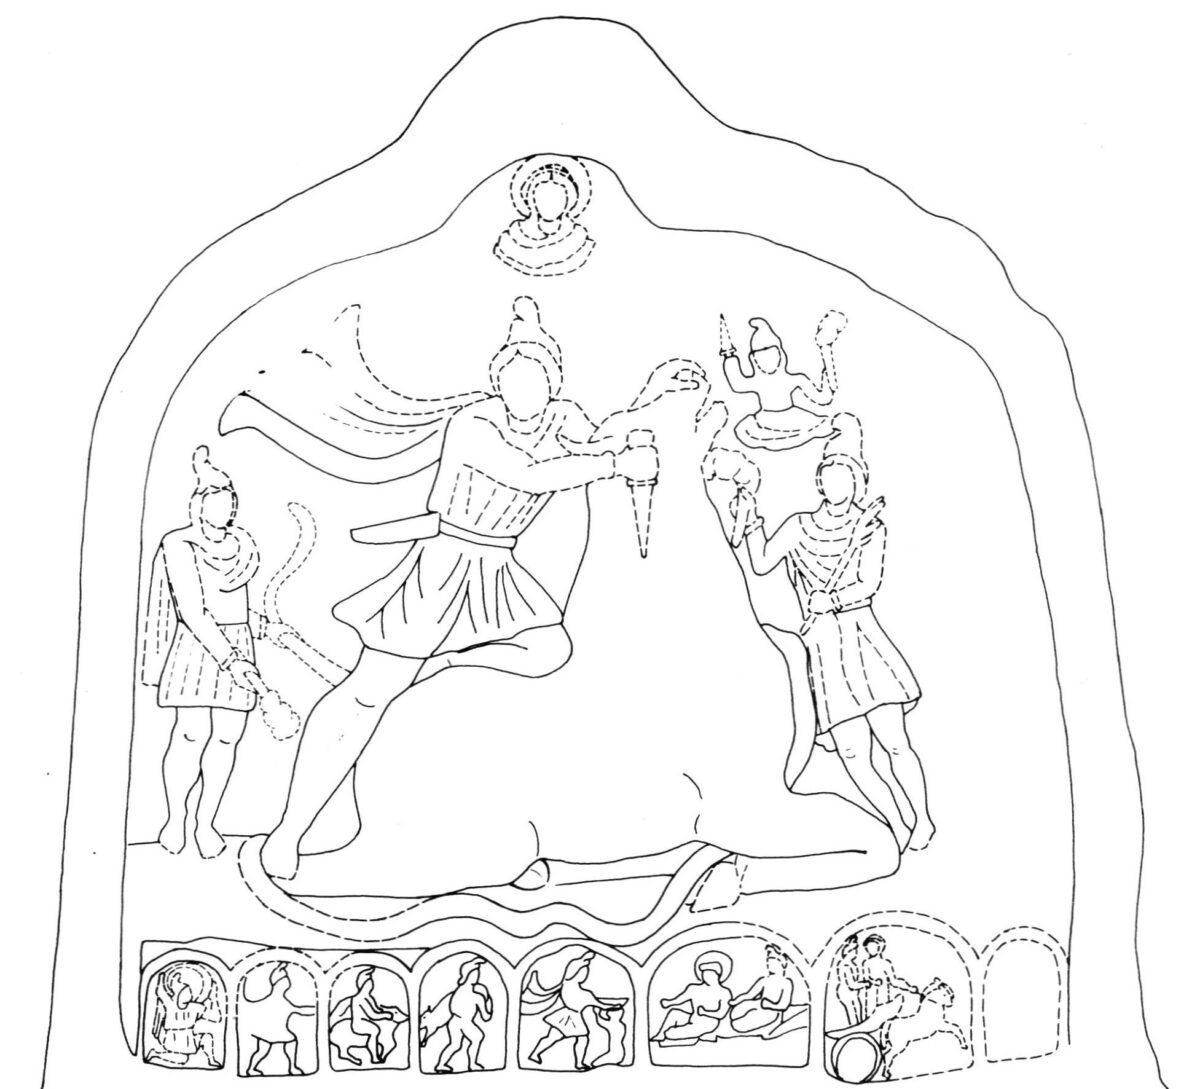 Σχέδιο της παράστασης που εικονίζεται στο ανάγλυφο του Μίθρα Ταυροκτόνου. Πηγή εικόνας: ΑΠΕ-ΜΠΕ.